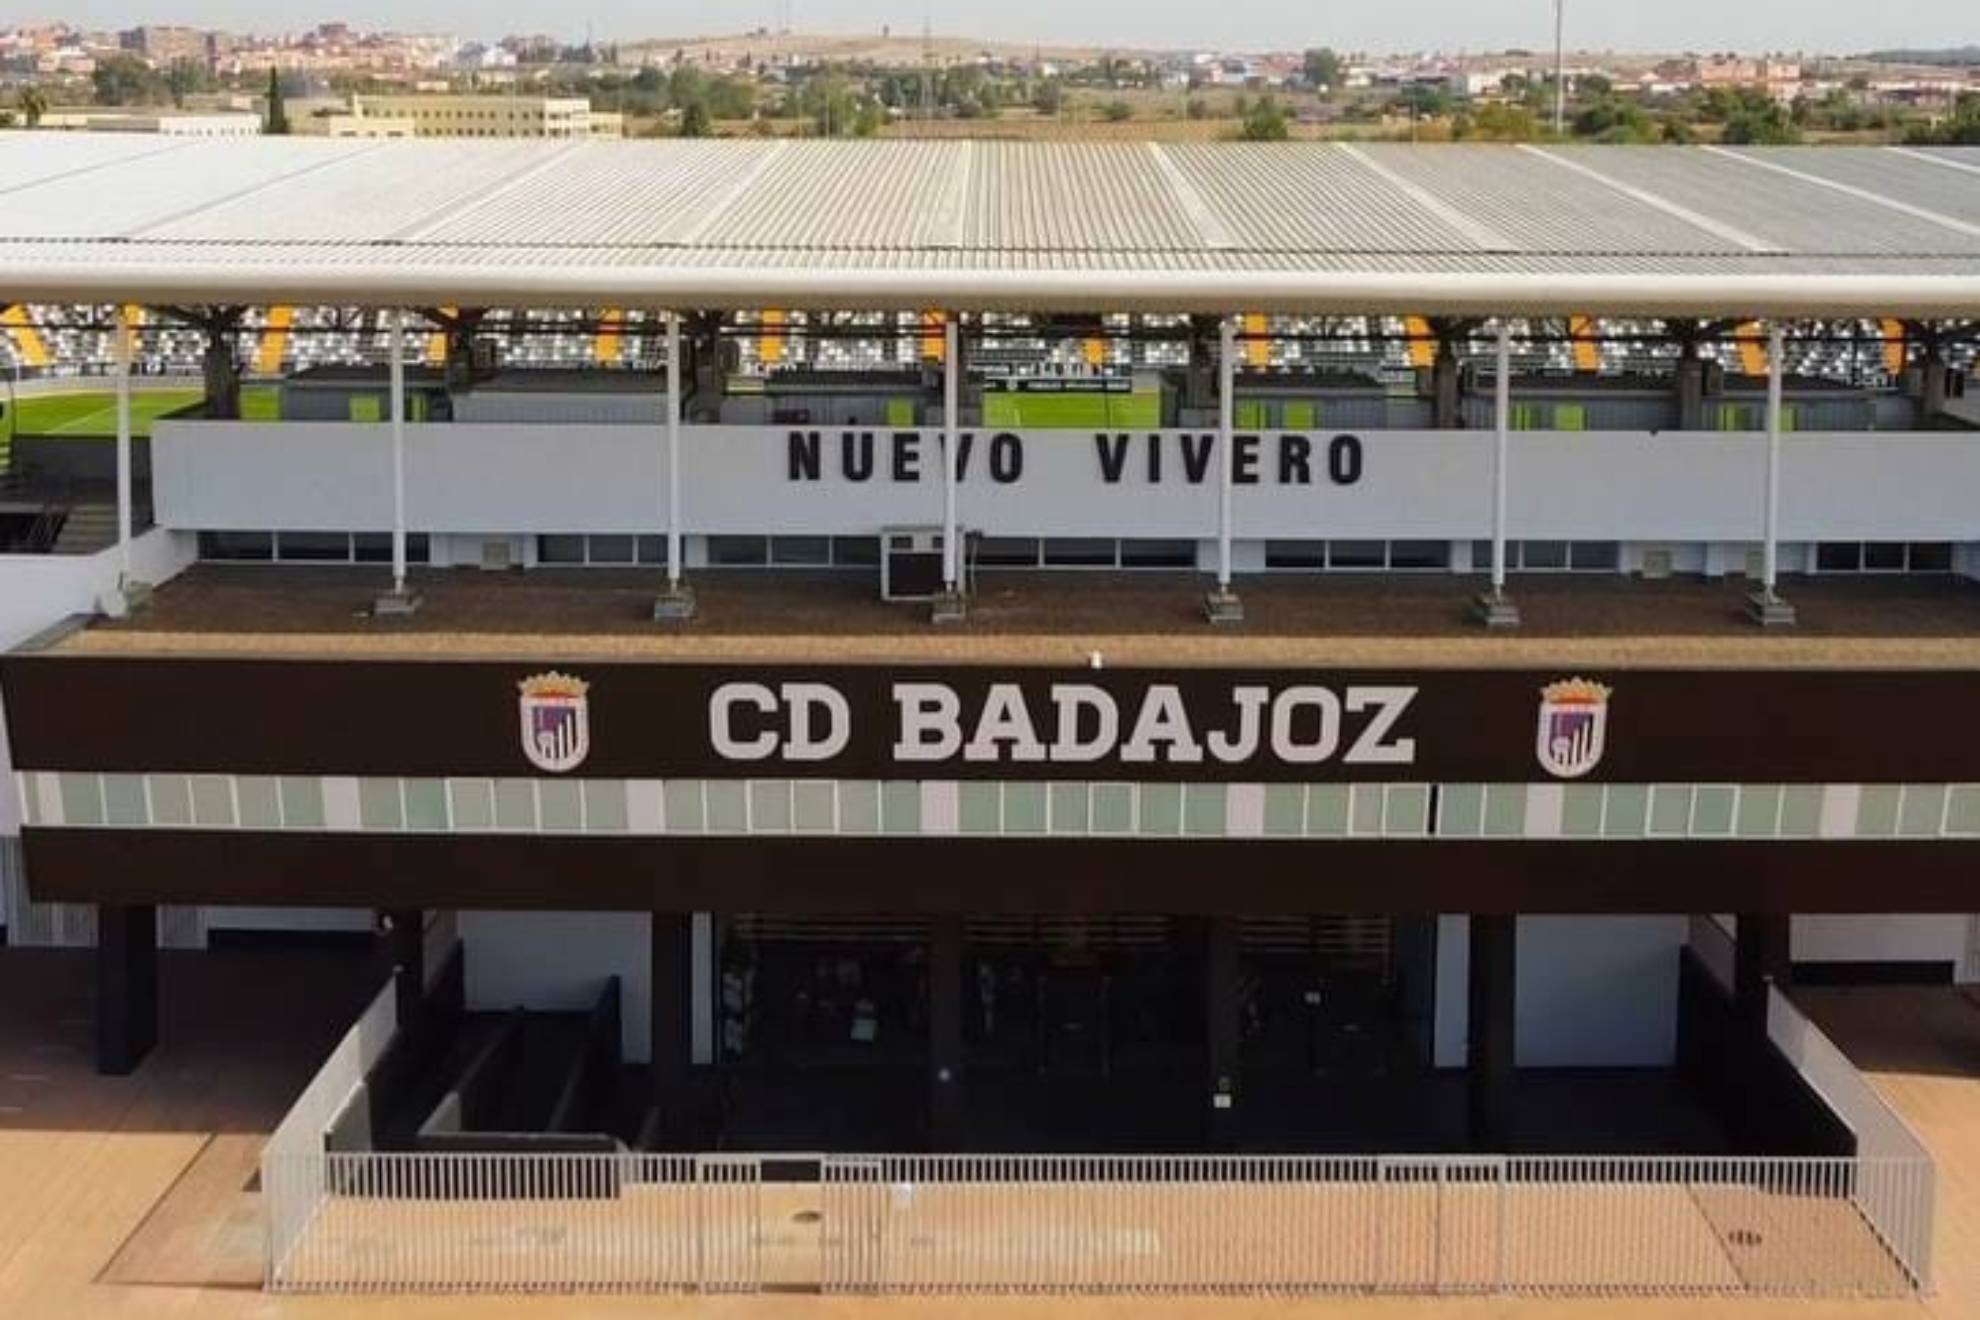 El estadio Nuevo Vivero, casa del CD Badajoz.